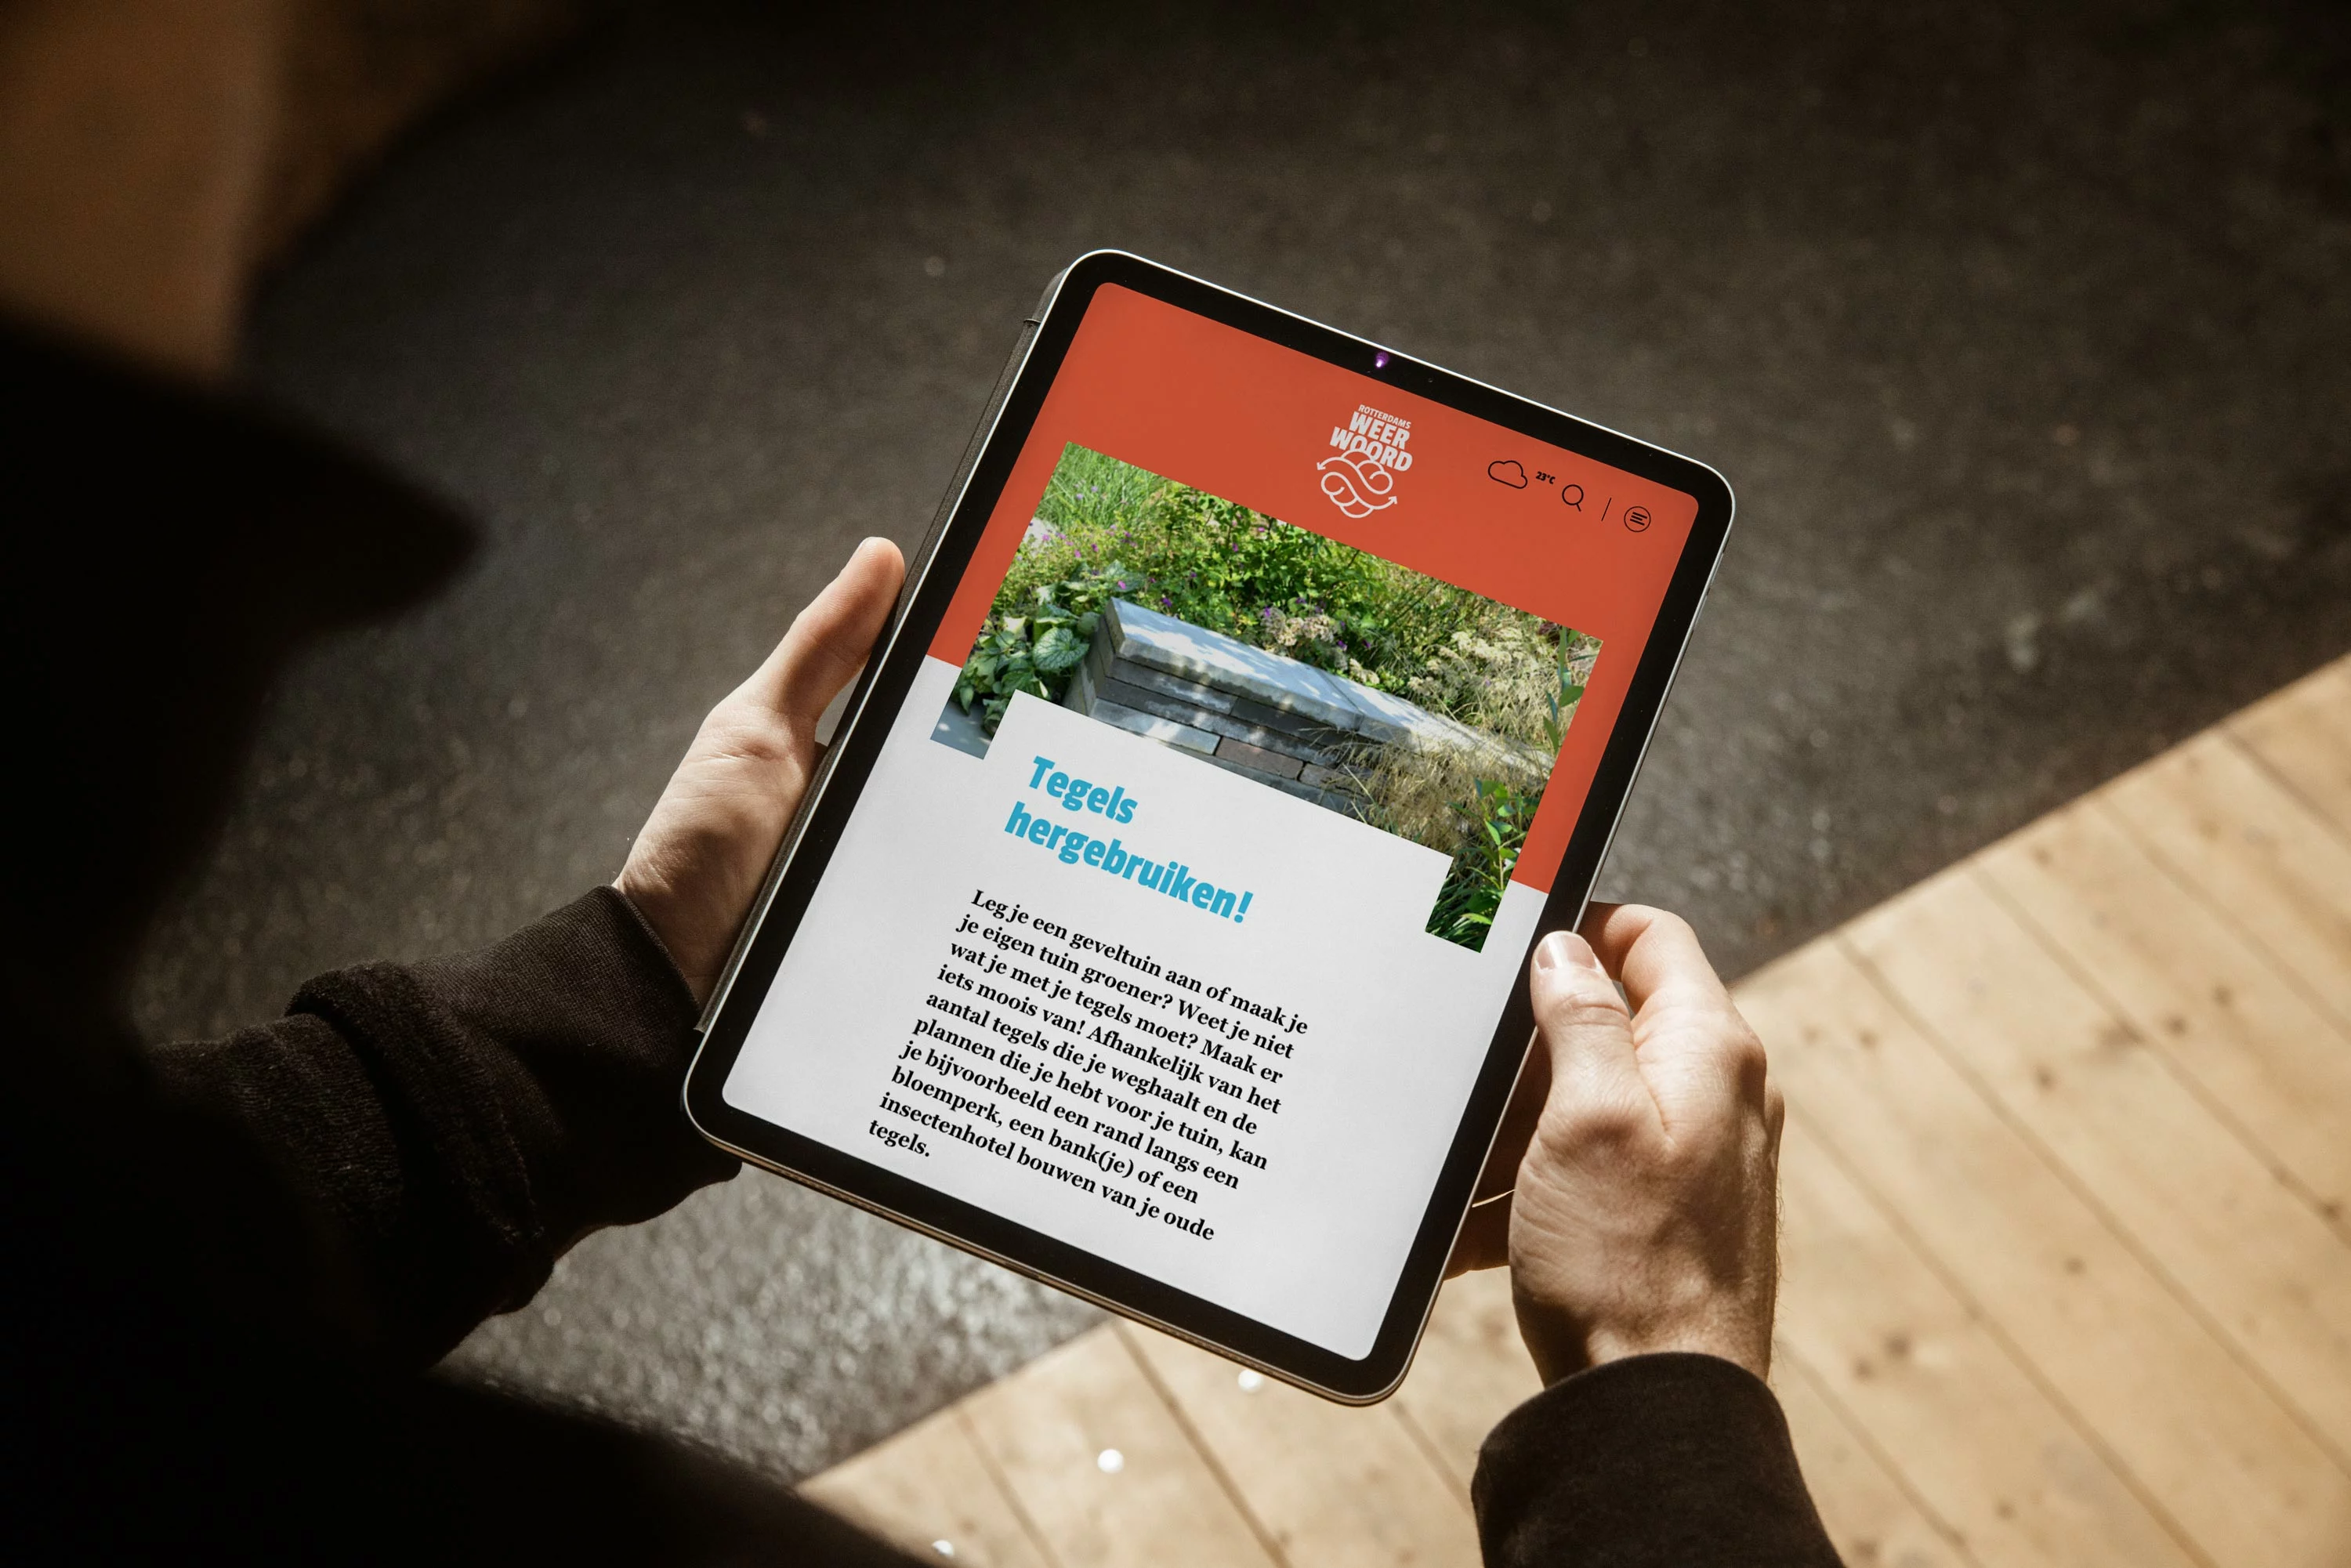 Iemand houdt een iPad vast met daarop de pagina van tegelwerken, hierop kunnen mensen tips vinden over wat ze met hun tegels uit de tuin kunnen doen. Van inspiratie tot een heel stappenplan.